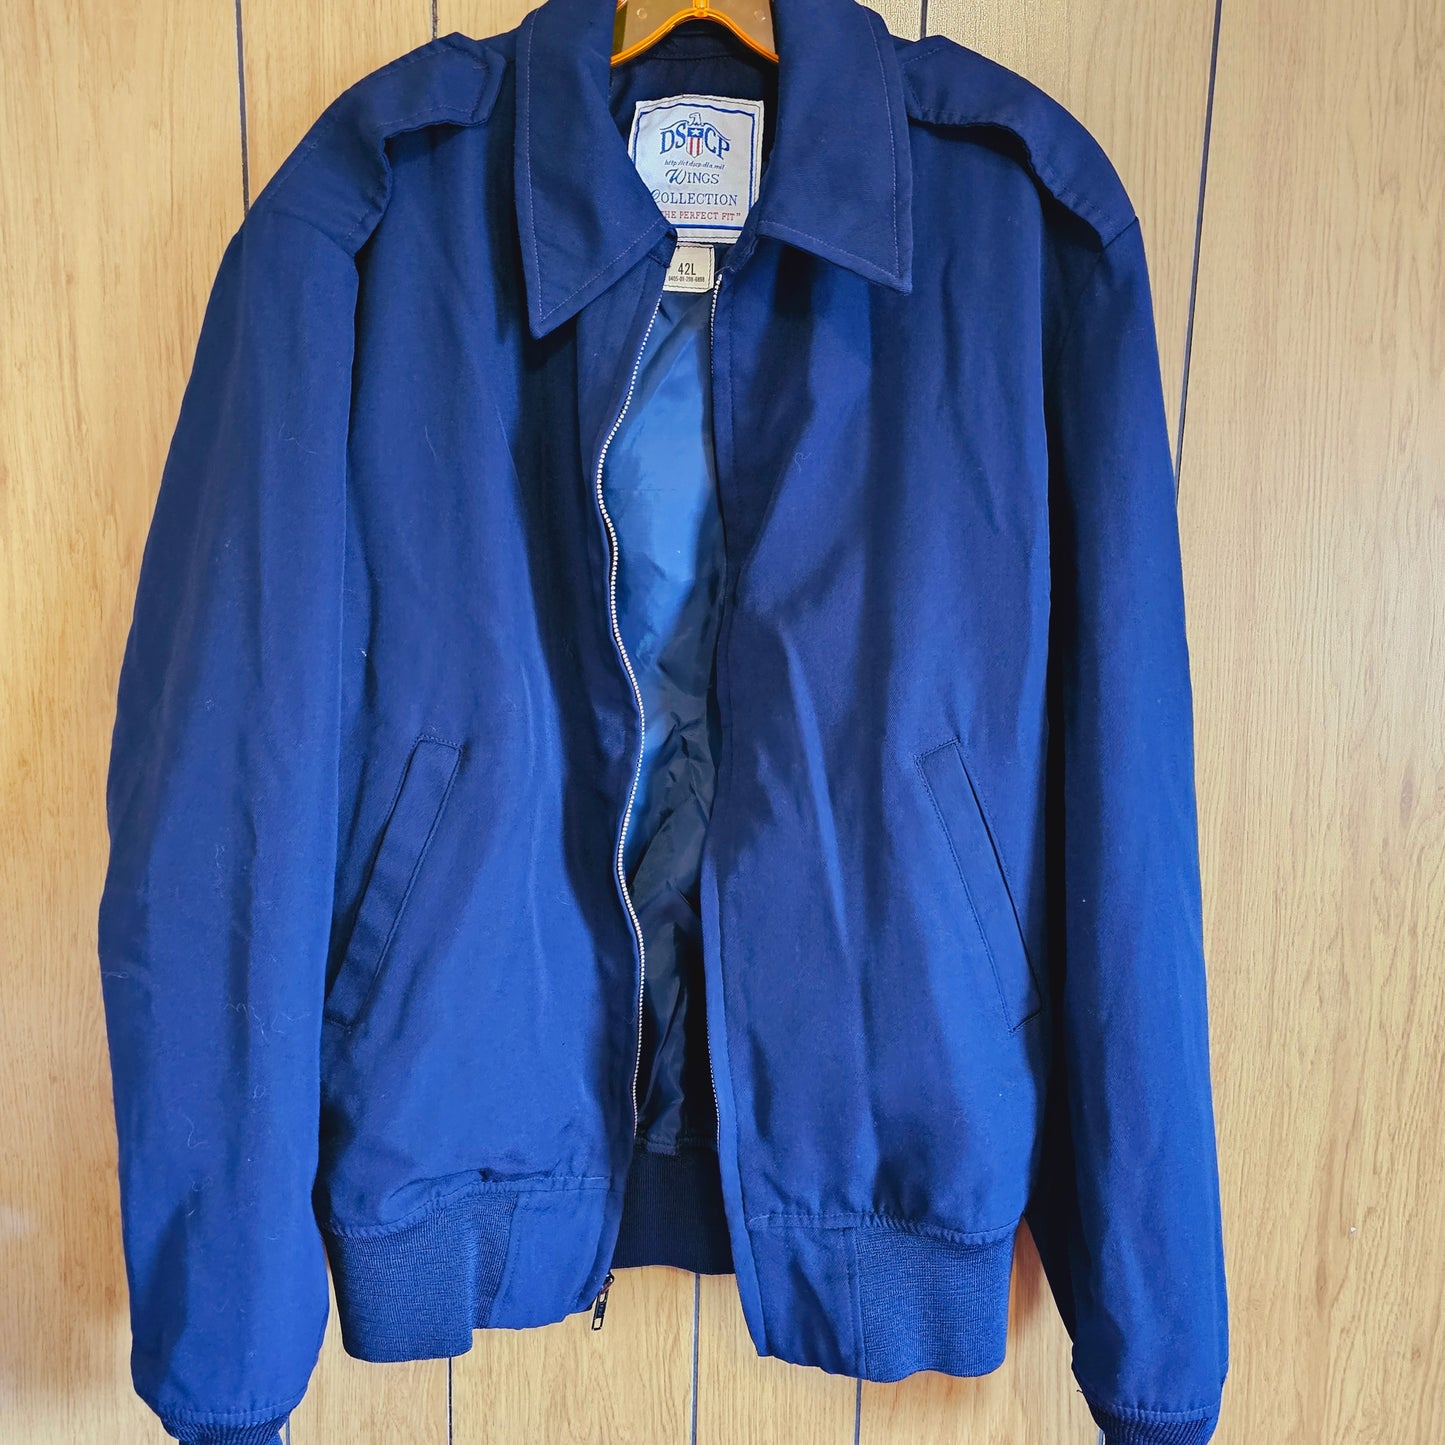 Navy Blue Uniform Jacket (M/L)